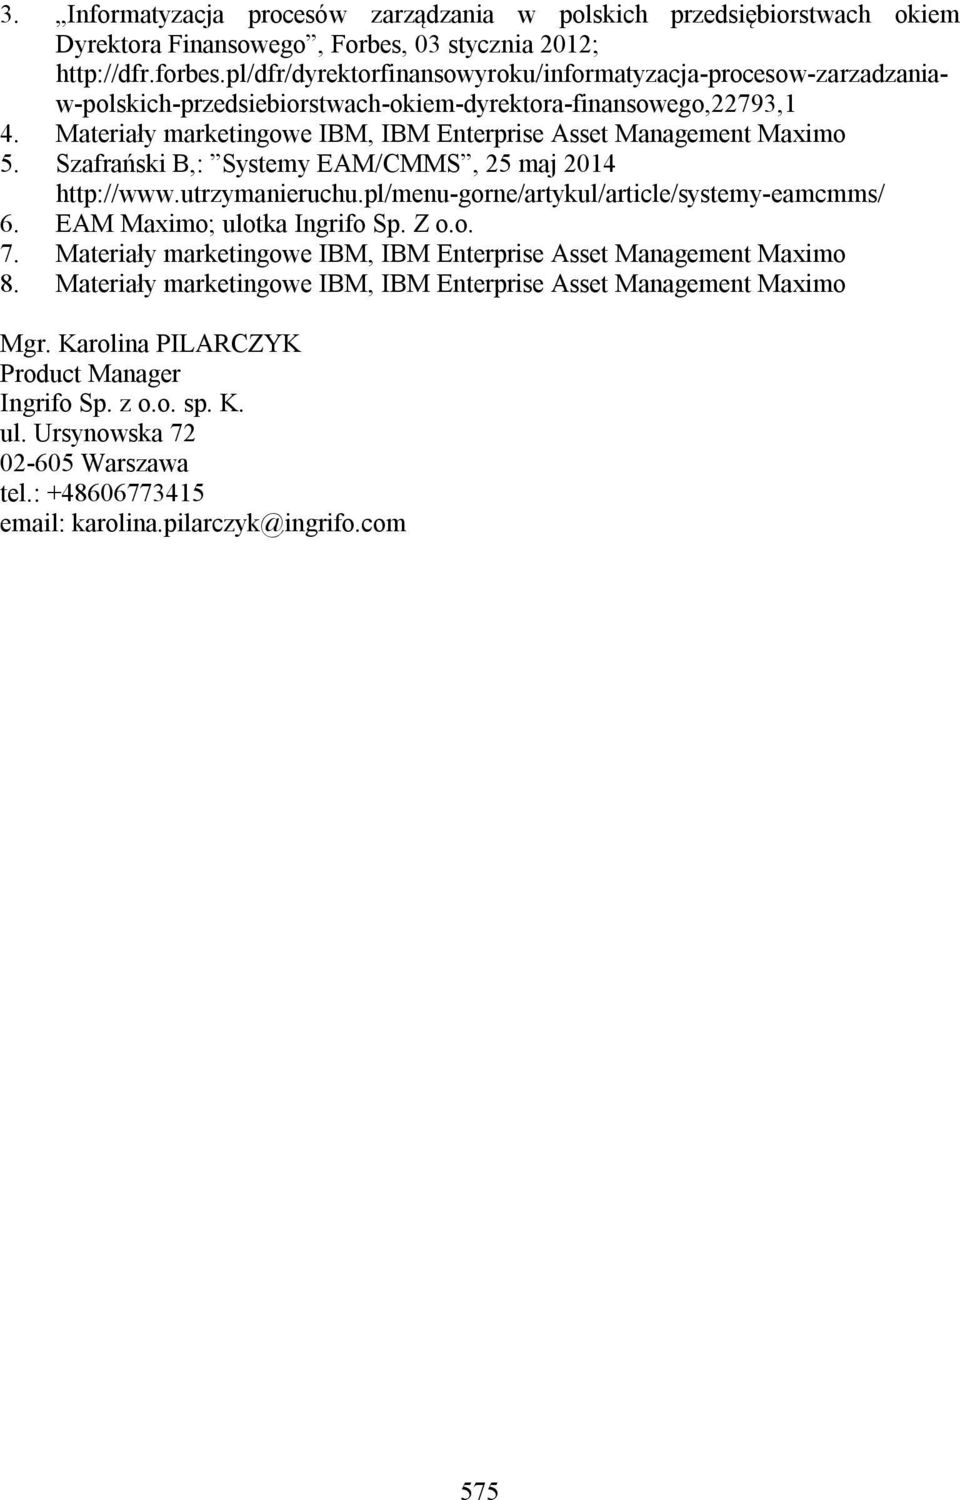 Materiały marketingowe IBM, IBM Enterprise Asset Management Maximo 5. Szafrański B,: Systemy EAM/CMMS, 25 maj 2014 http://www.utrzymanieruchu.pl/menu-gorne/artykul/article/systemy-eamcmms/ 6.